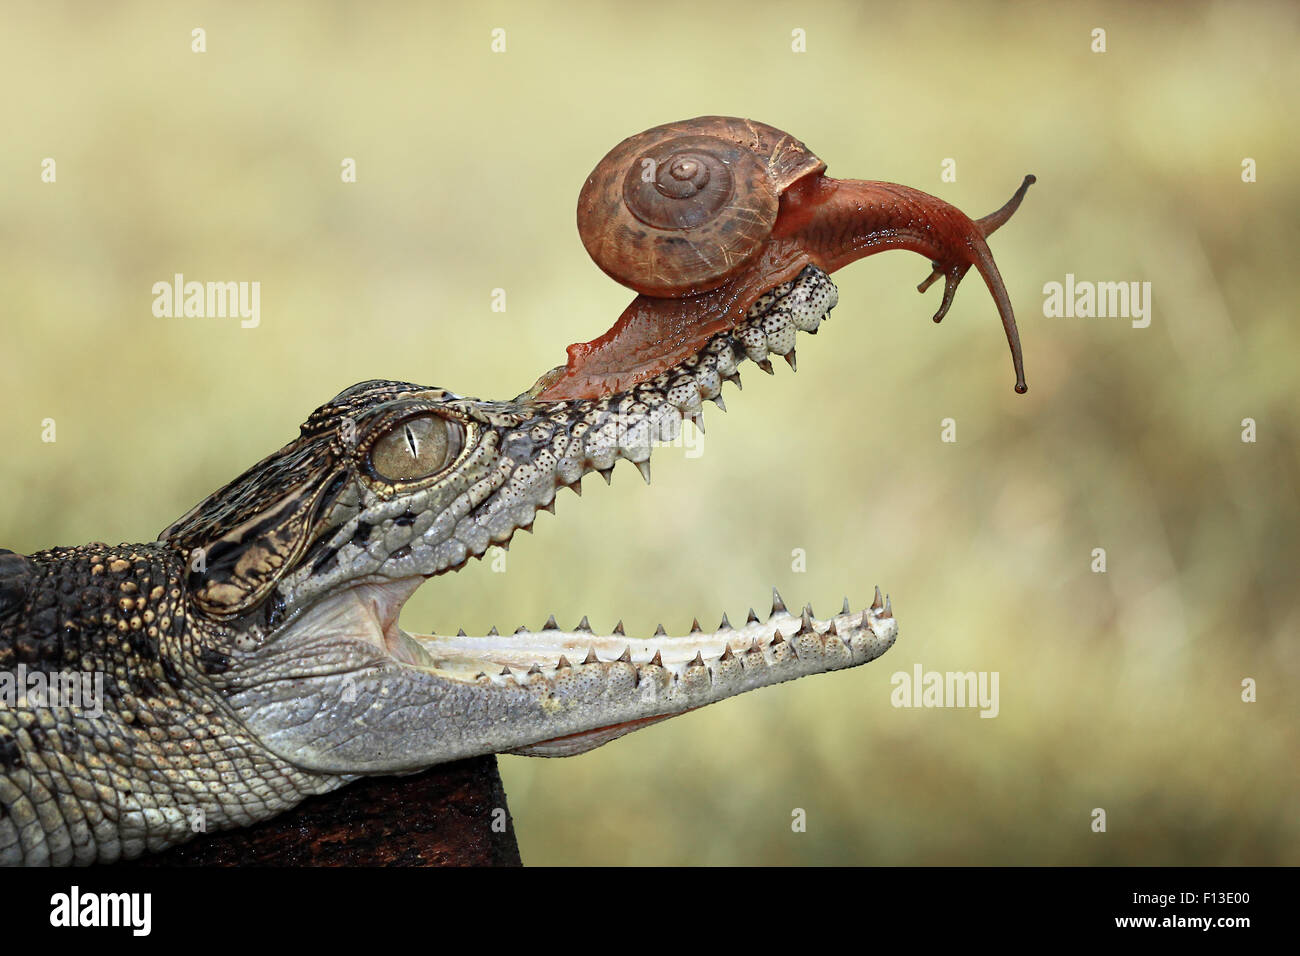 Retrato de un caracol sentado en la boca del cocodrilo bebé Foto de stock